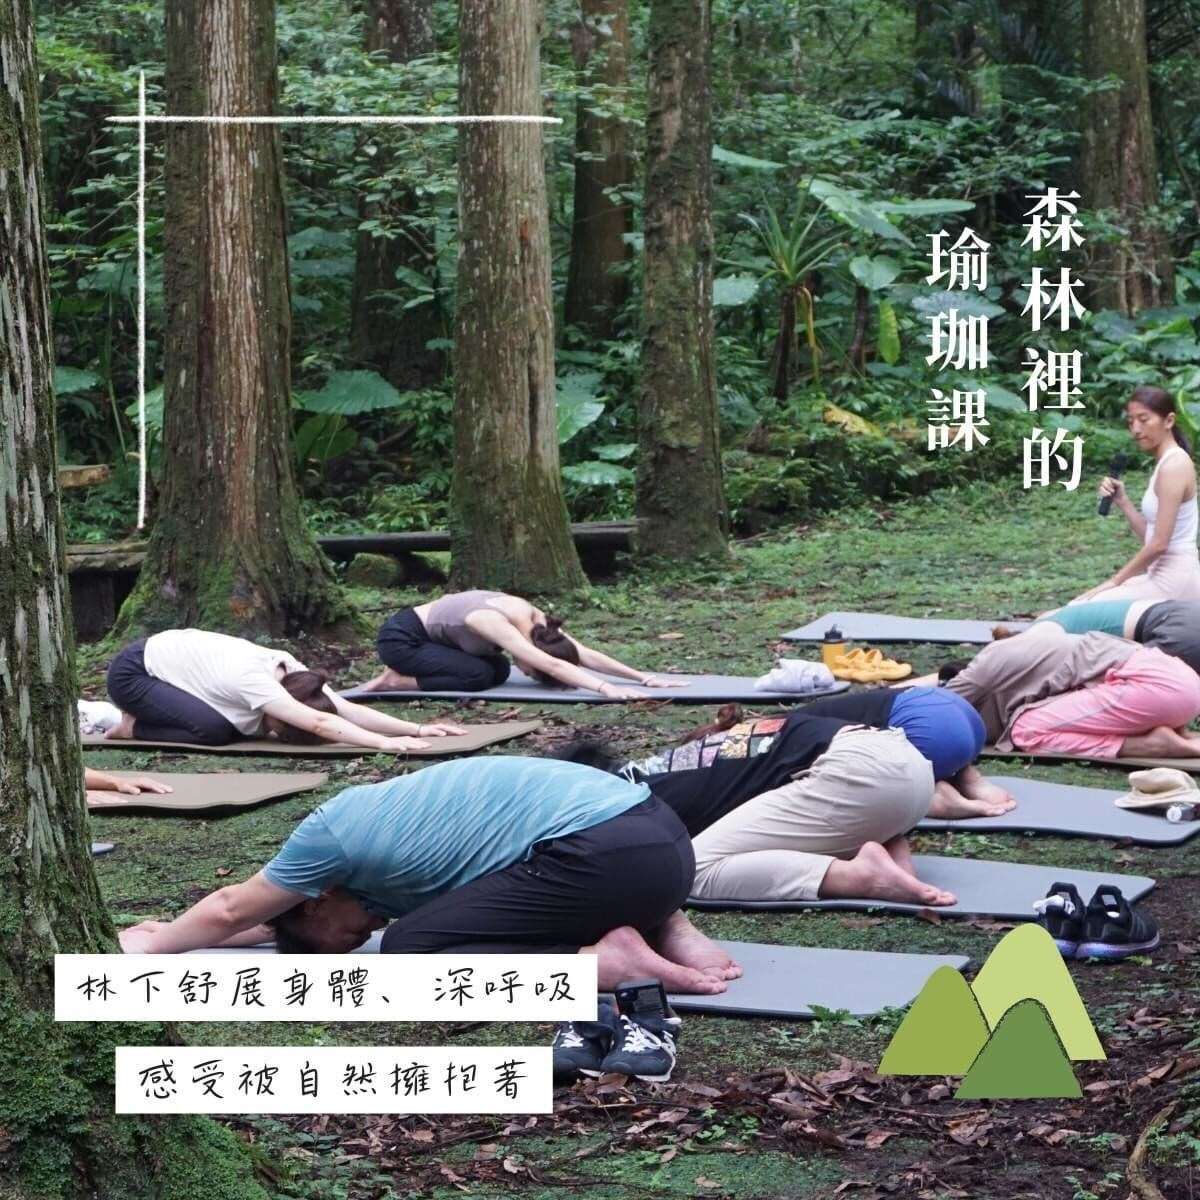 在芬多精的擁抱中，進行瑜珈練習，在森林環境音中，安定身心，舒展身體，緩解日常疲勞